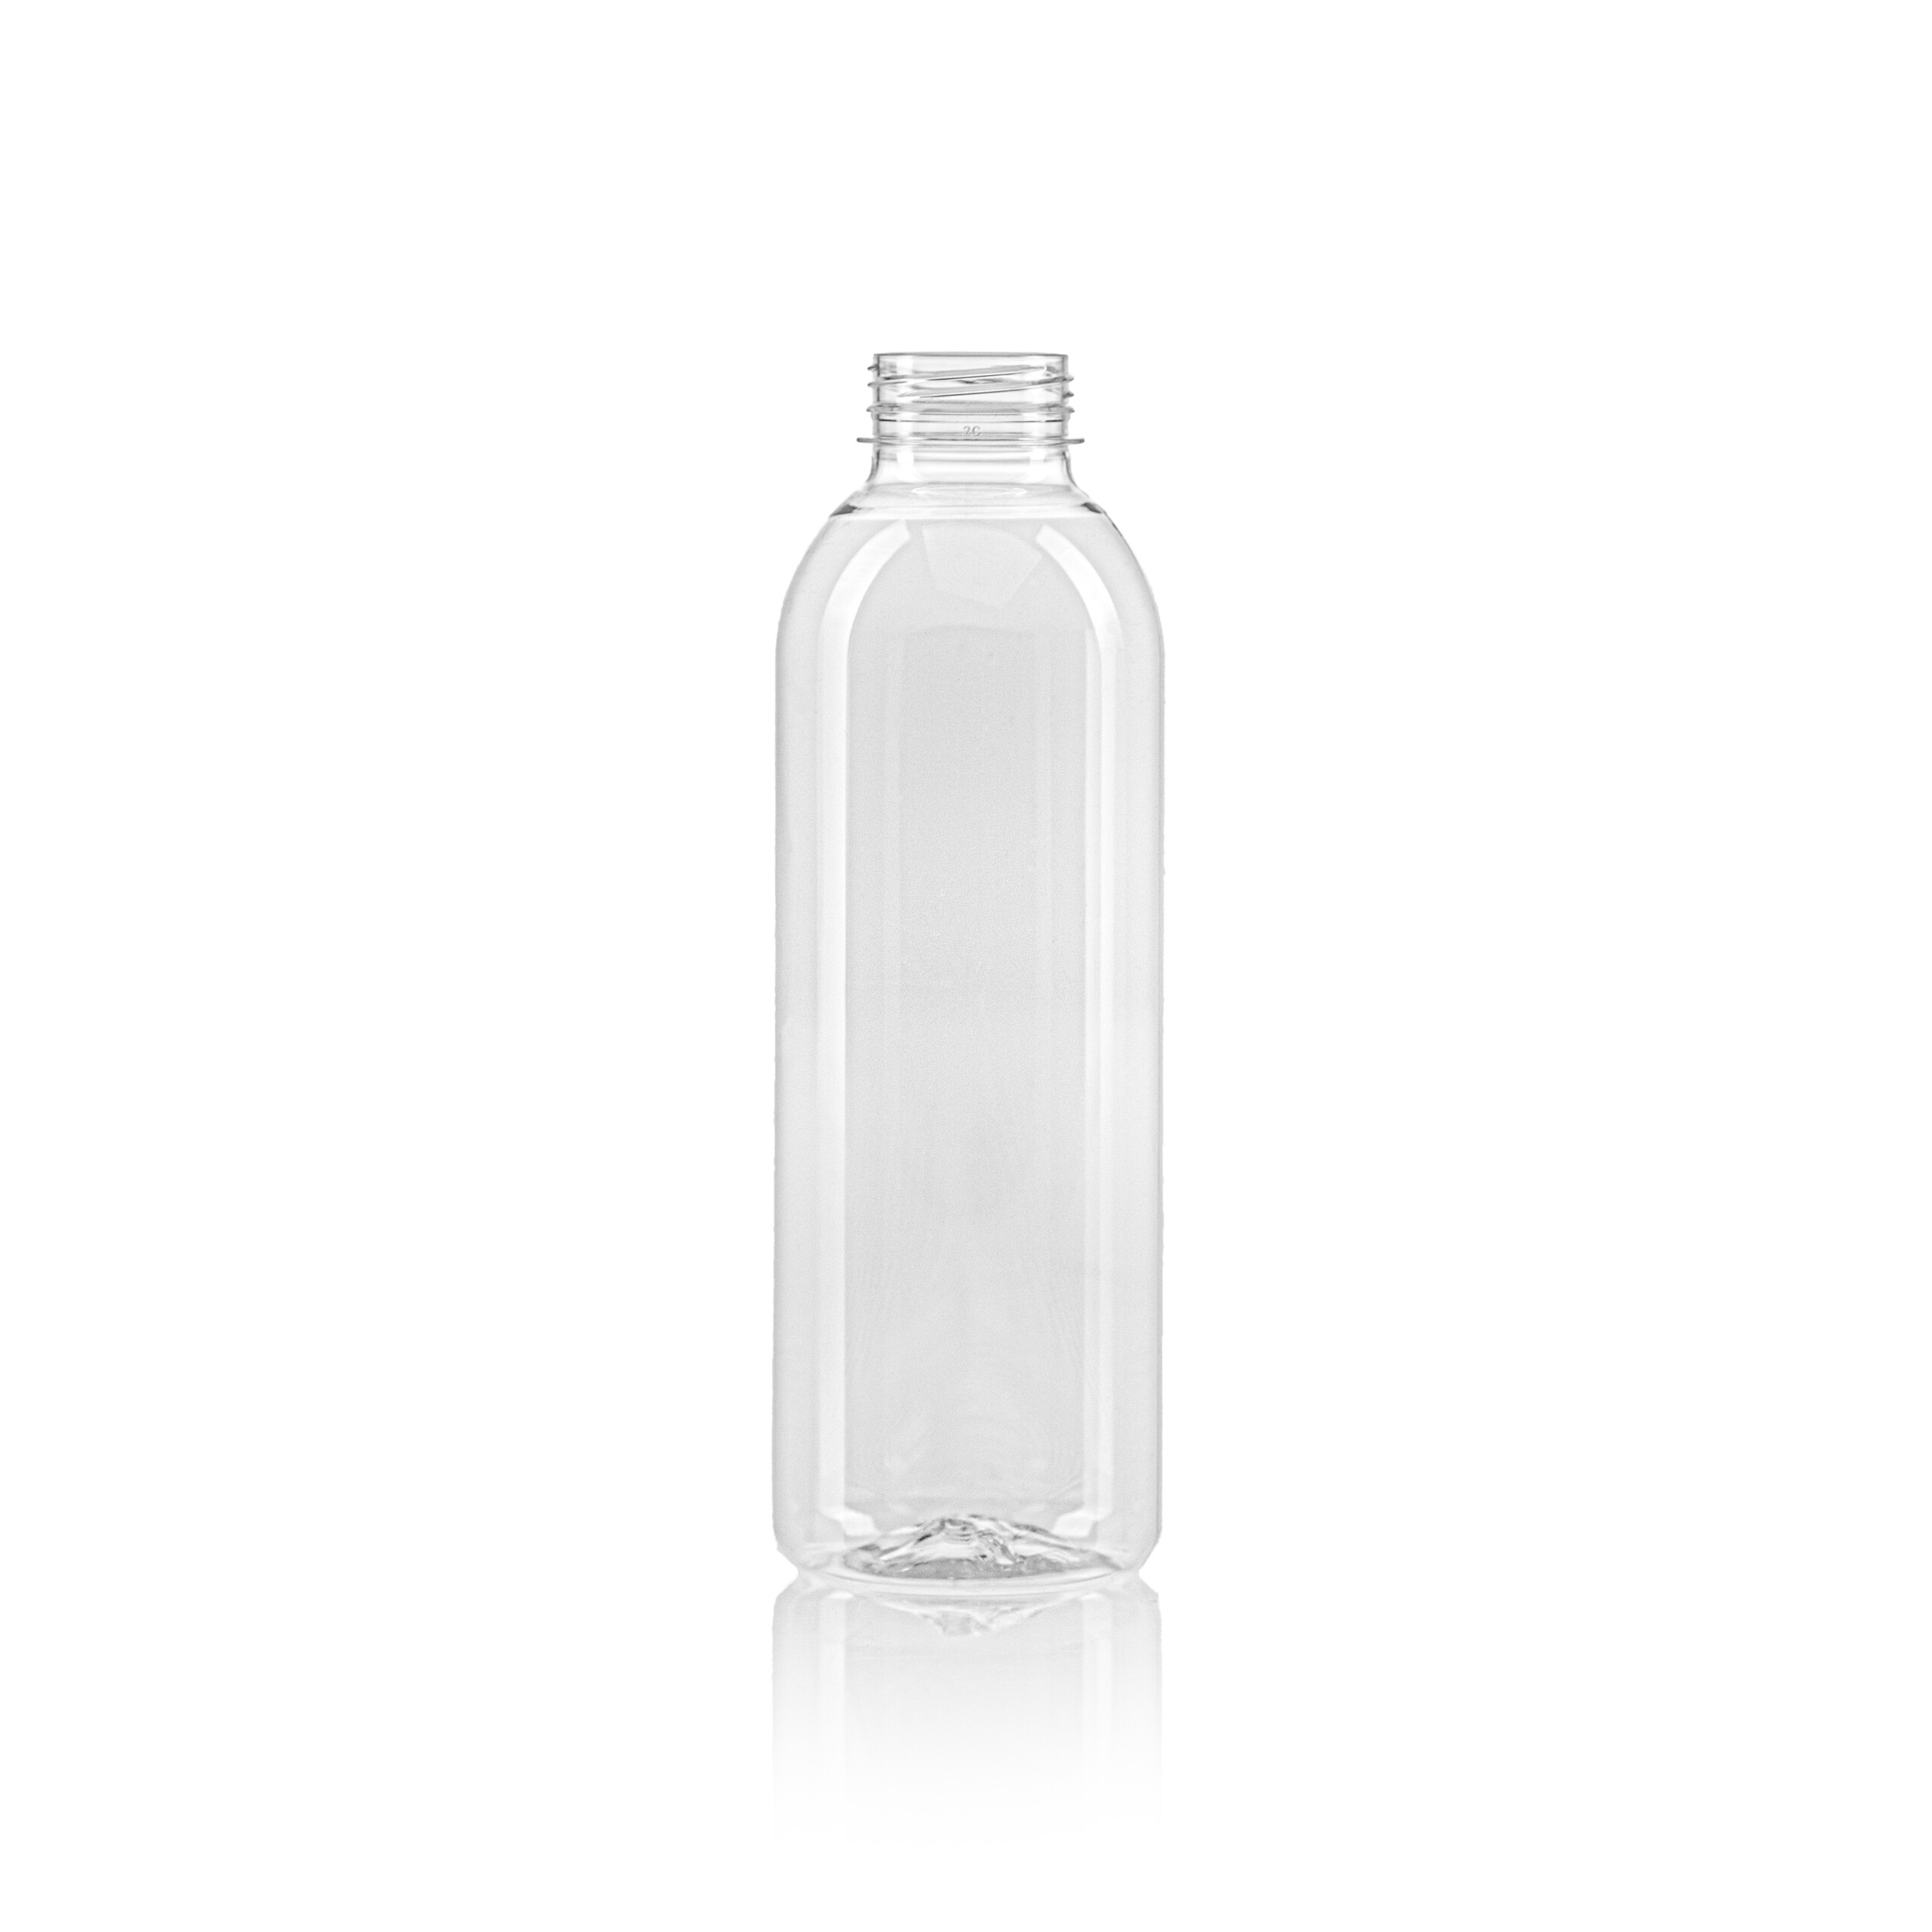 PET juice bottle round 750ml scaled PET